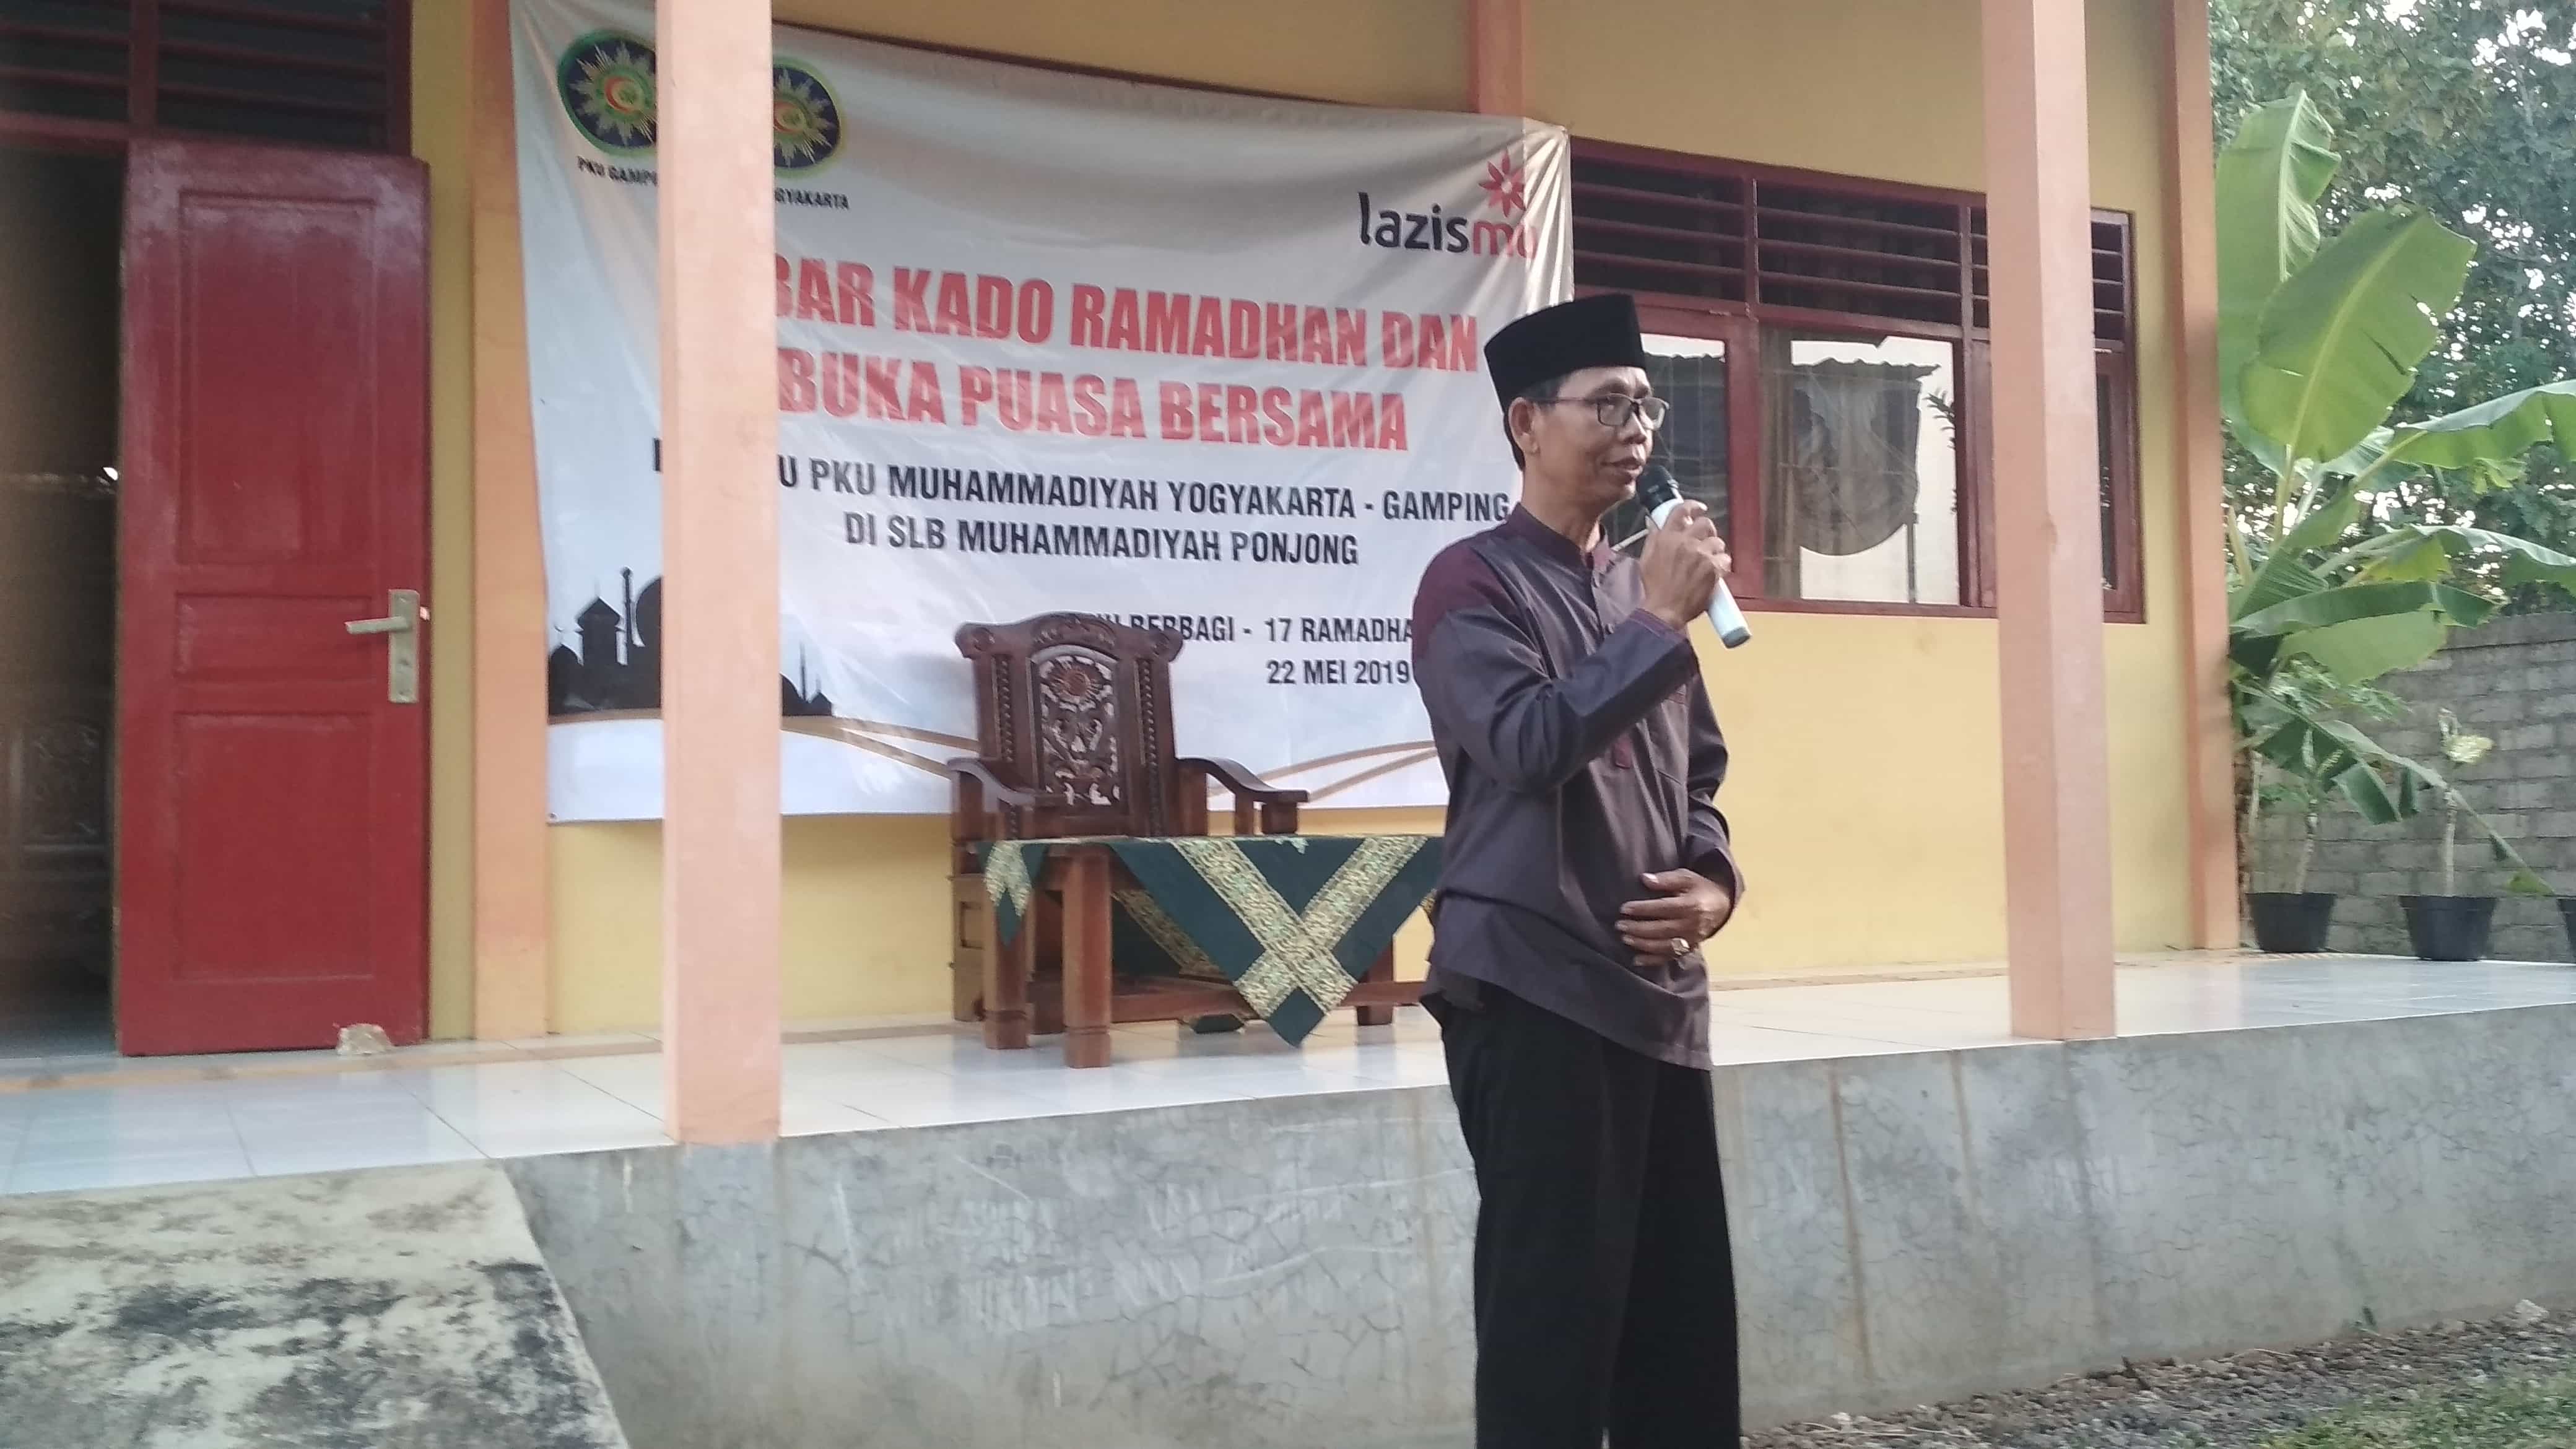 Buka Puasa dan Sebar Kado Ramadhan bersama Lazismu RS PKU Muhammadiyah Gamping-Yogyakarta